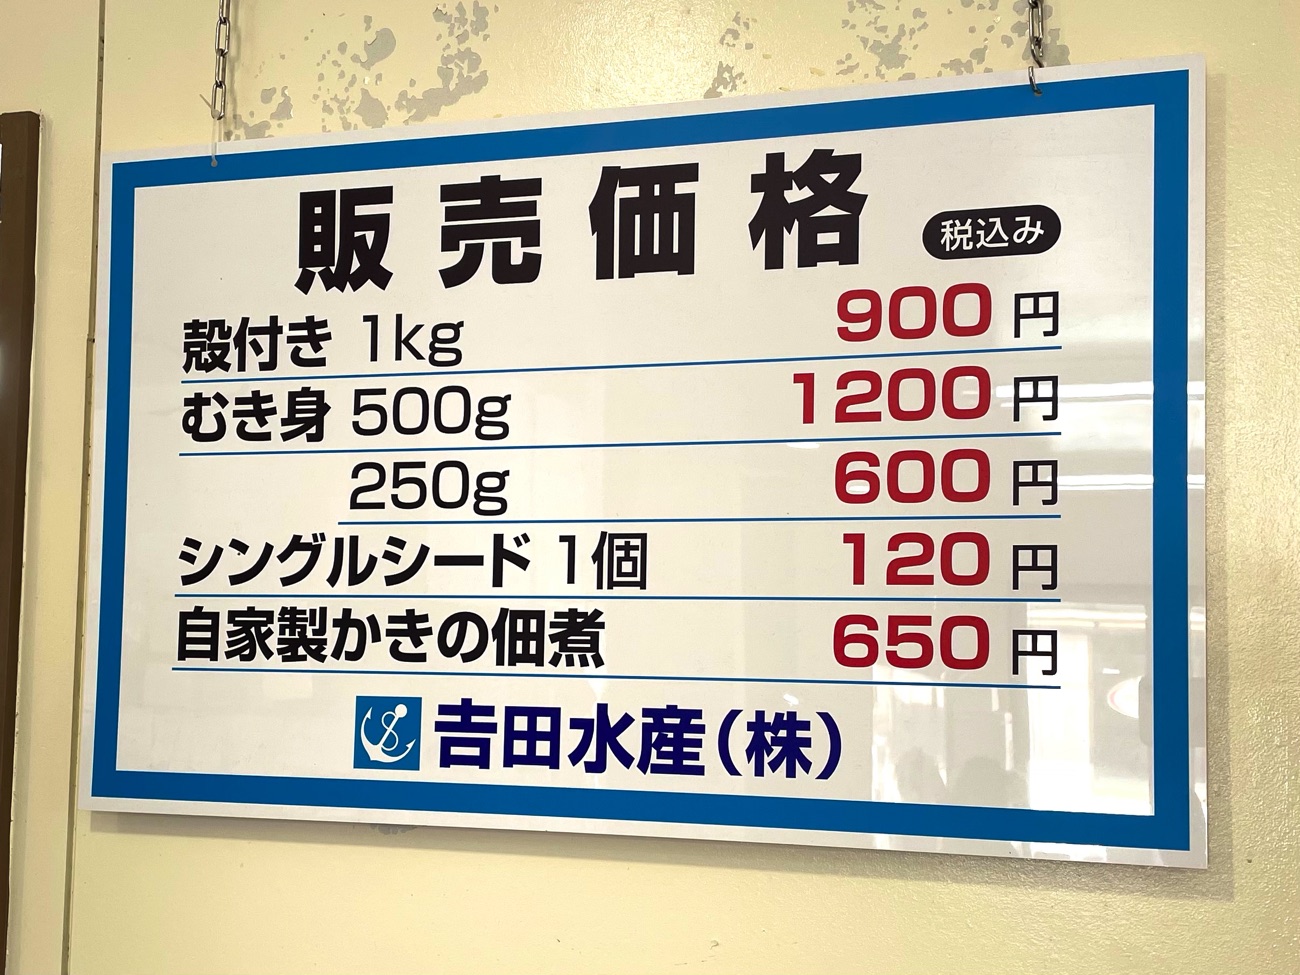 「吉田水産」の牡蠣販売価格